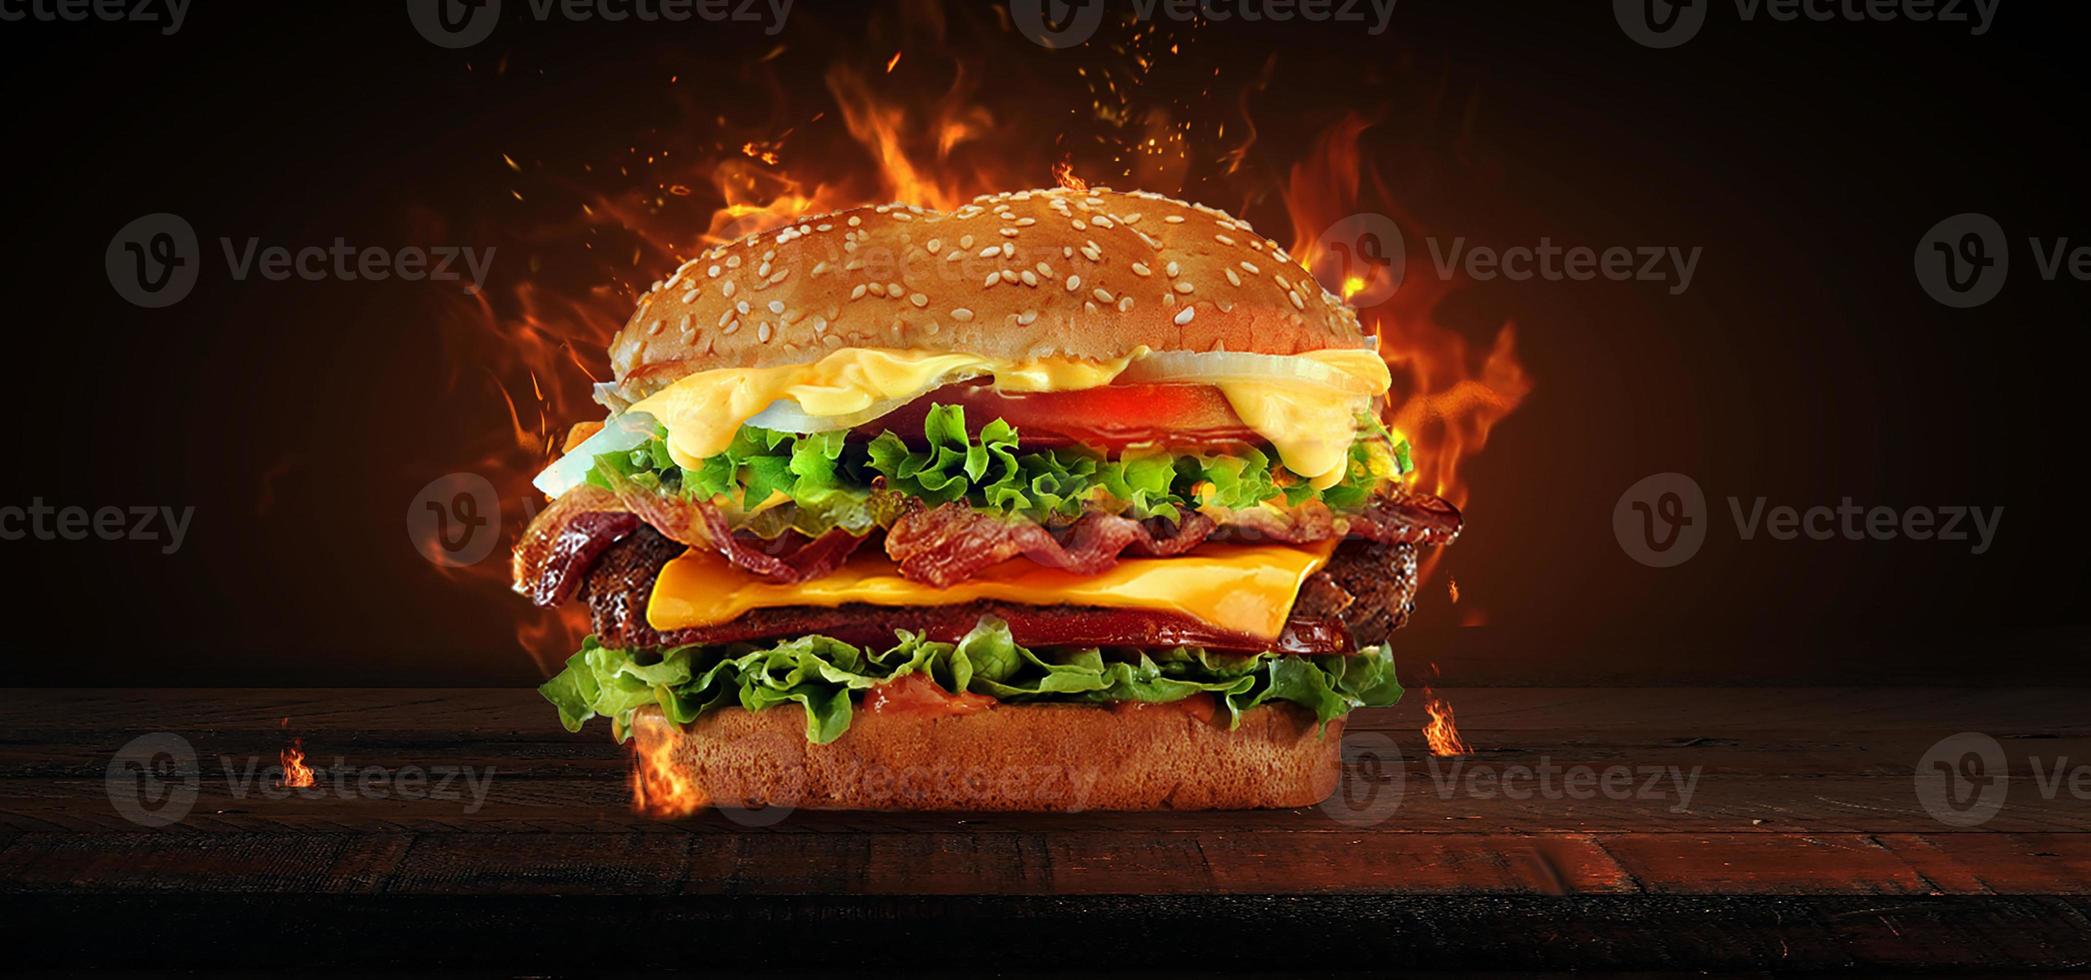 Burger savoureux frais isolé sur fond blanc photo